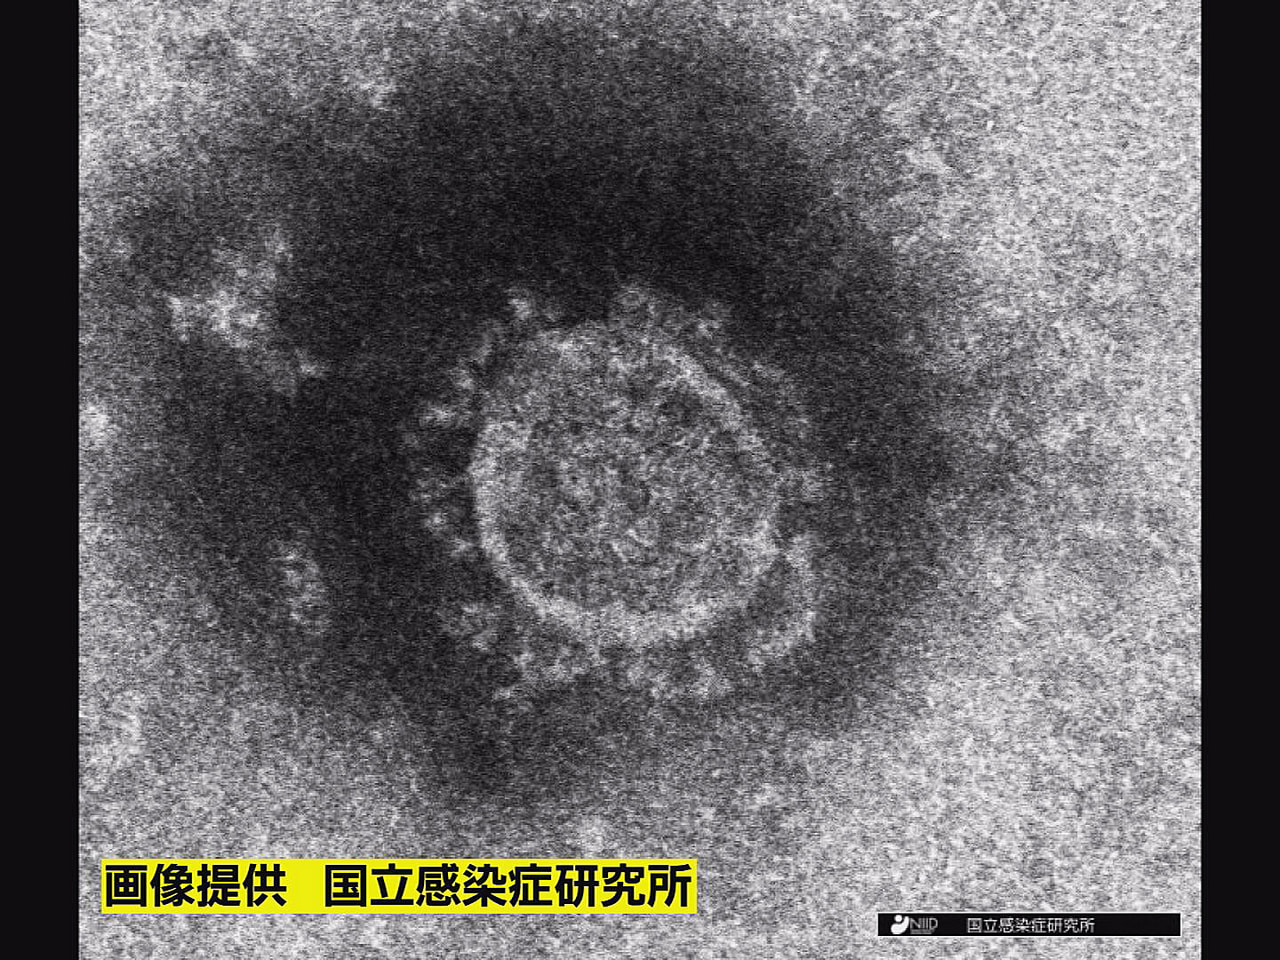 岐阜県は５日、新型コロナウイルスの新規感染者が７５５人確認されたと発表しました。...